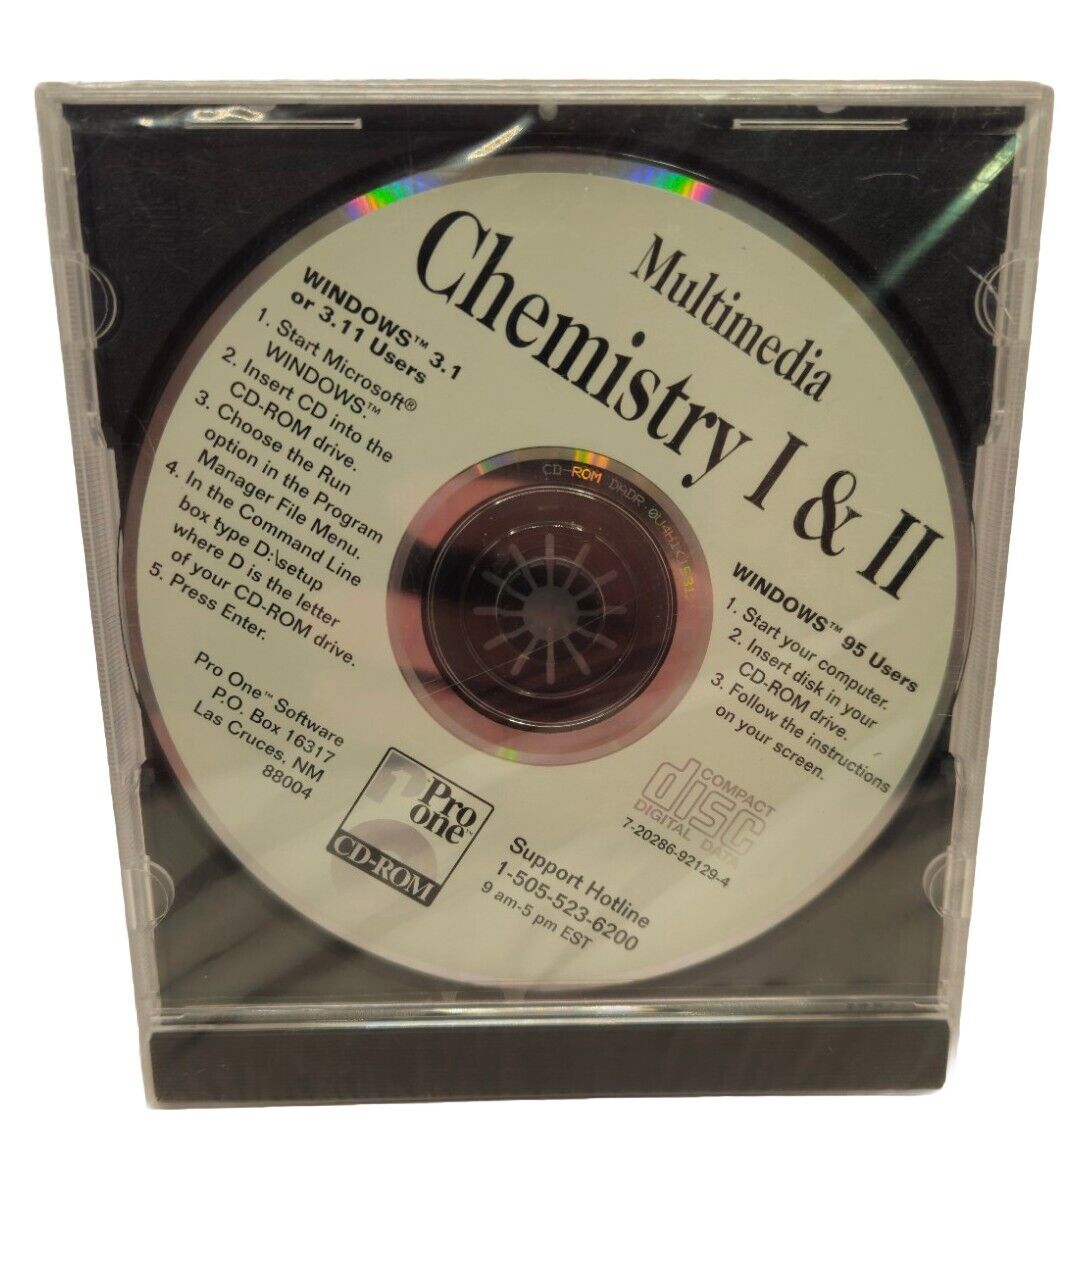 1 Pro One Multimedia Chemistry 1 & 2 Pc CDROM new sealed windows 3 3.11 95 VTG